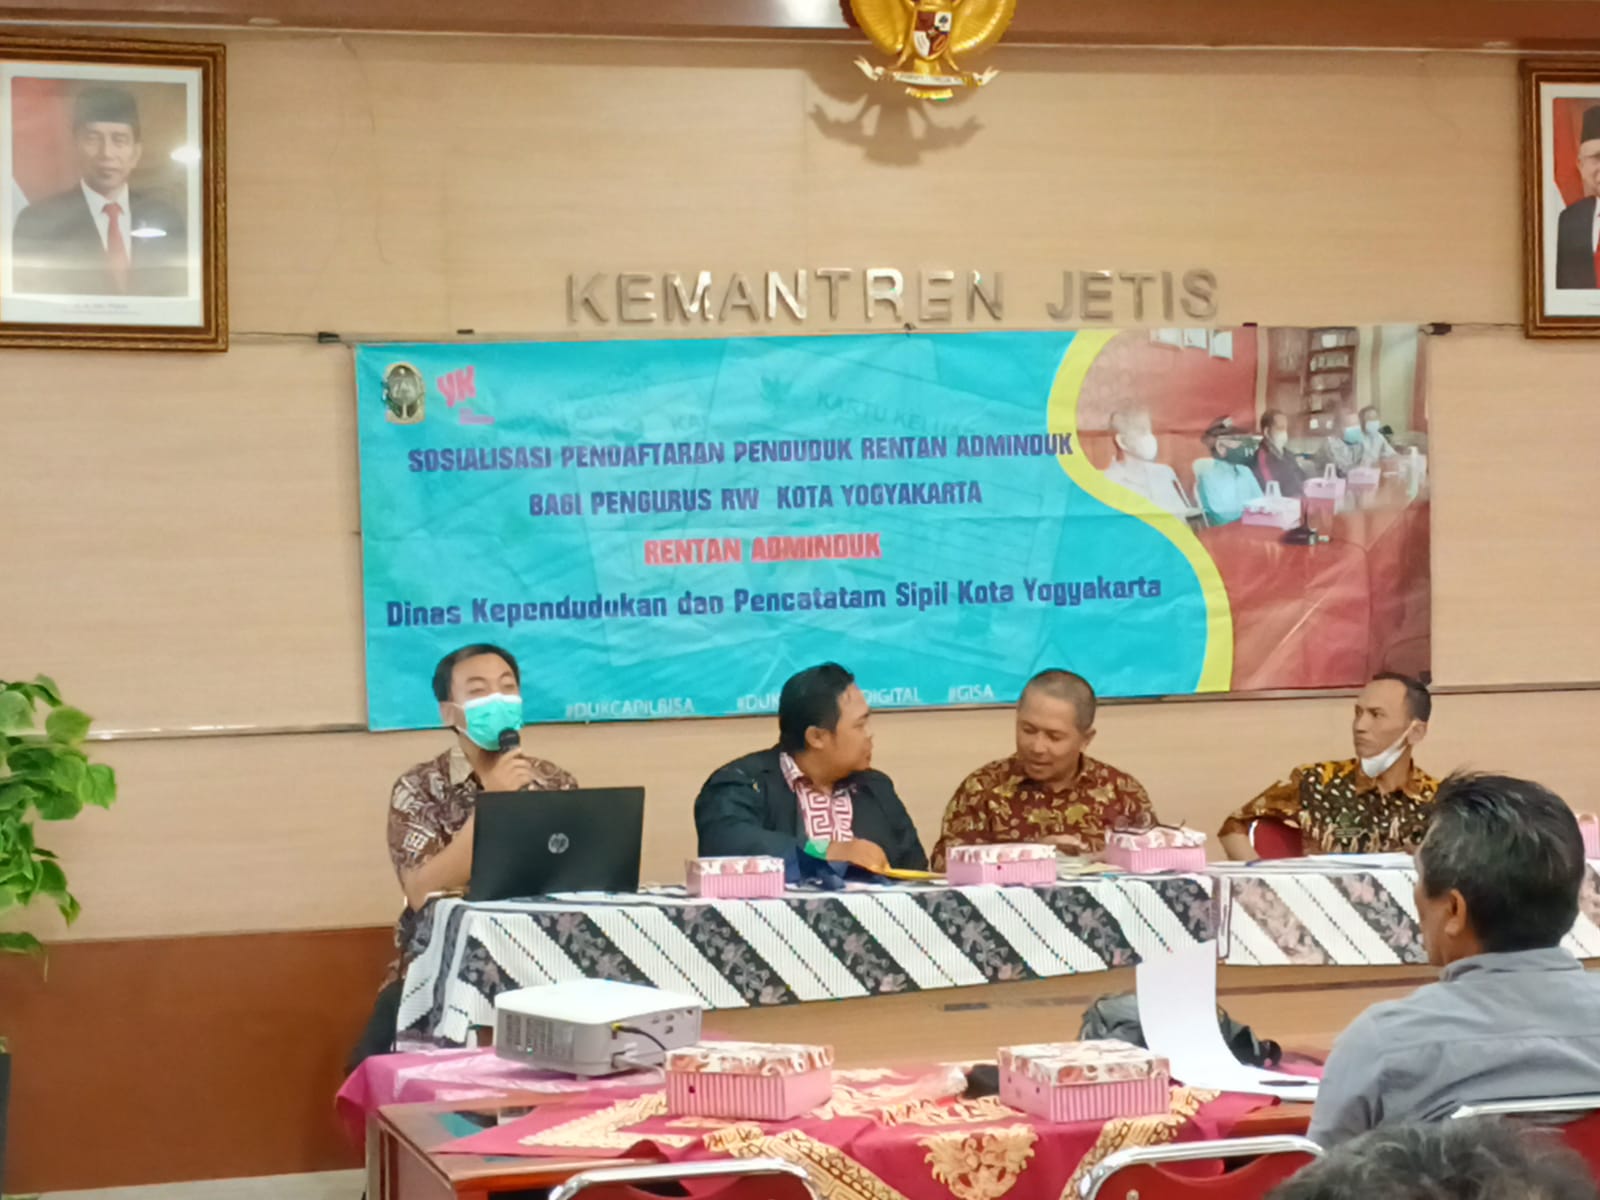 Sosialisasi Pendaftaran Penduduk Rentan Adminduk Bagi Pengurus Rw  Warga Kota Yogyakarta